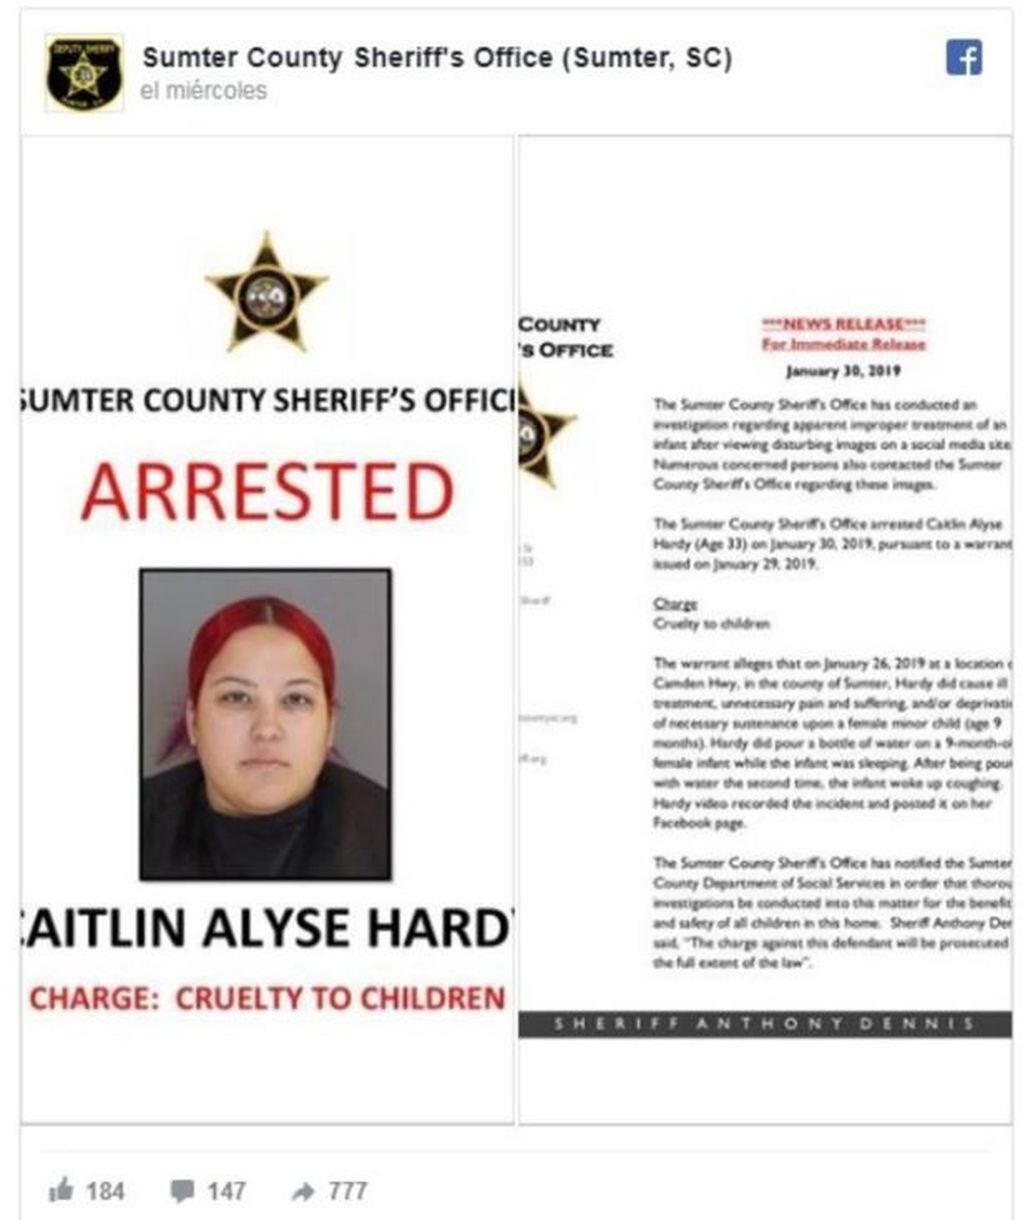 Según la orden de arresto, la mujer fue acusada de crueldad hacia los niños.